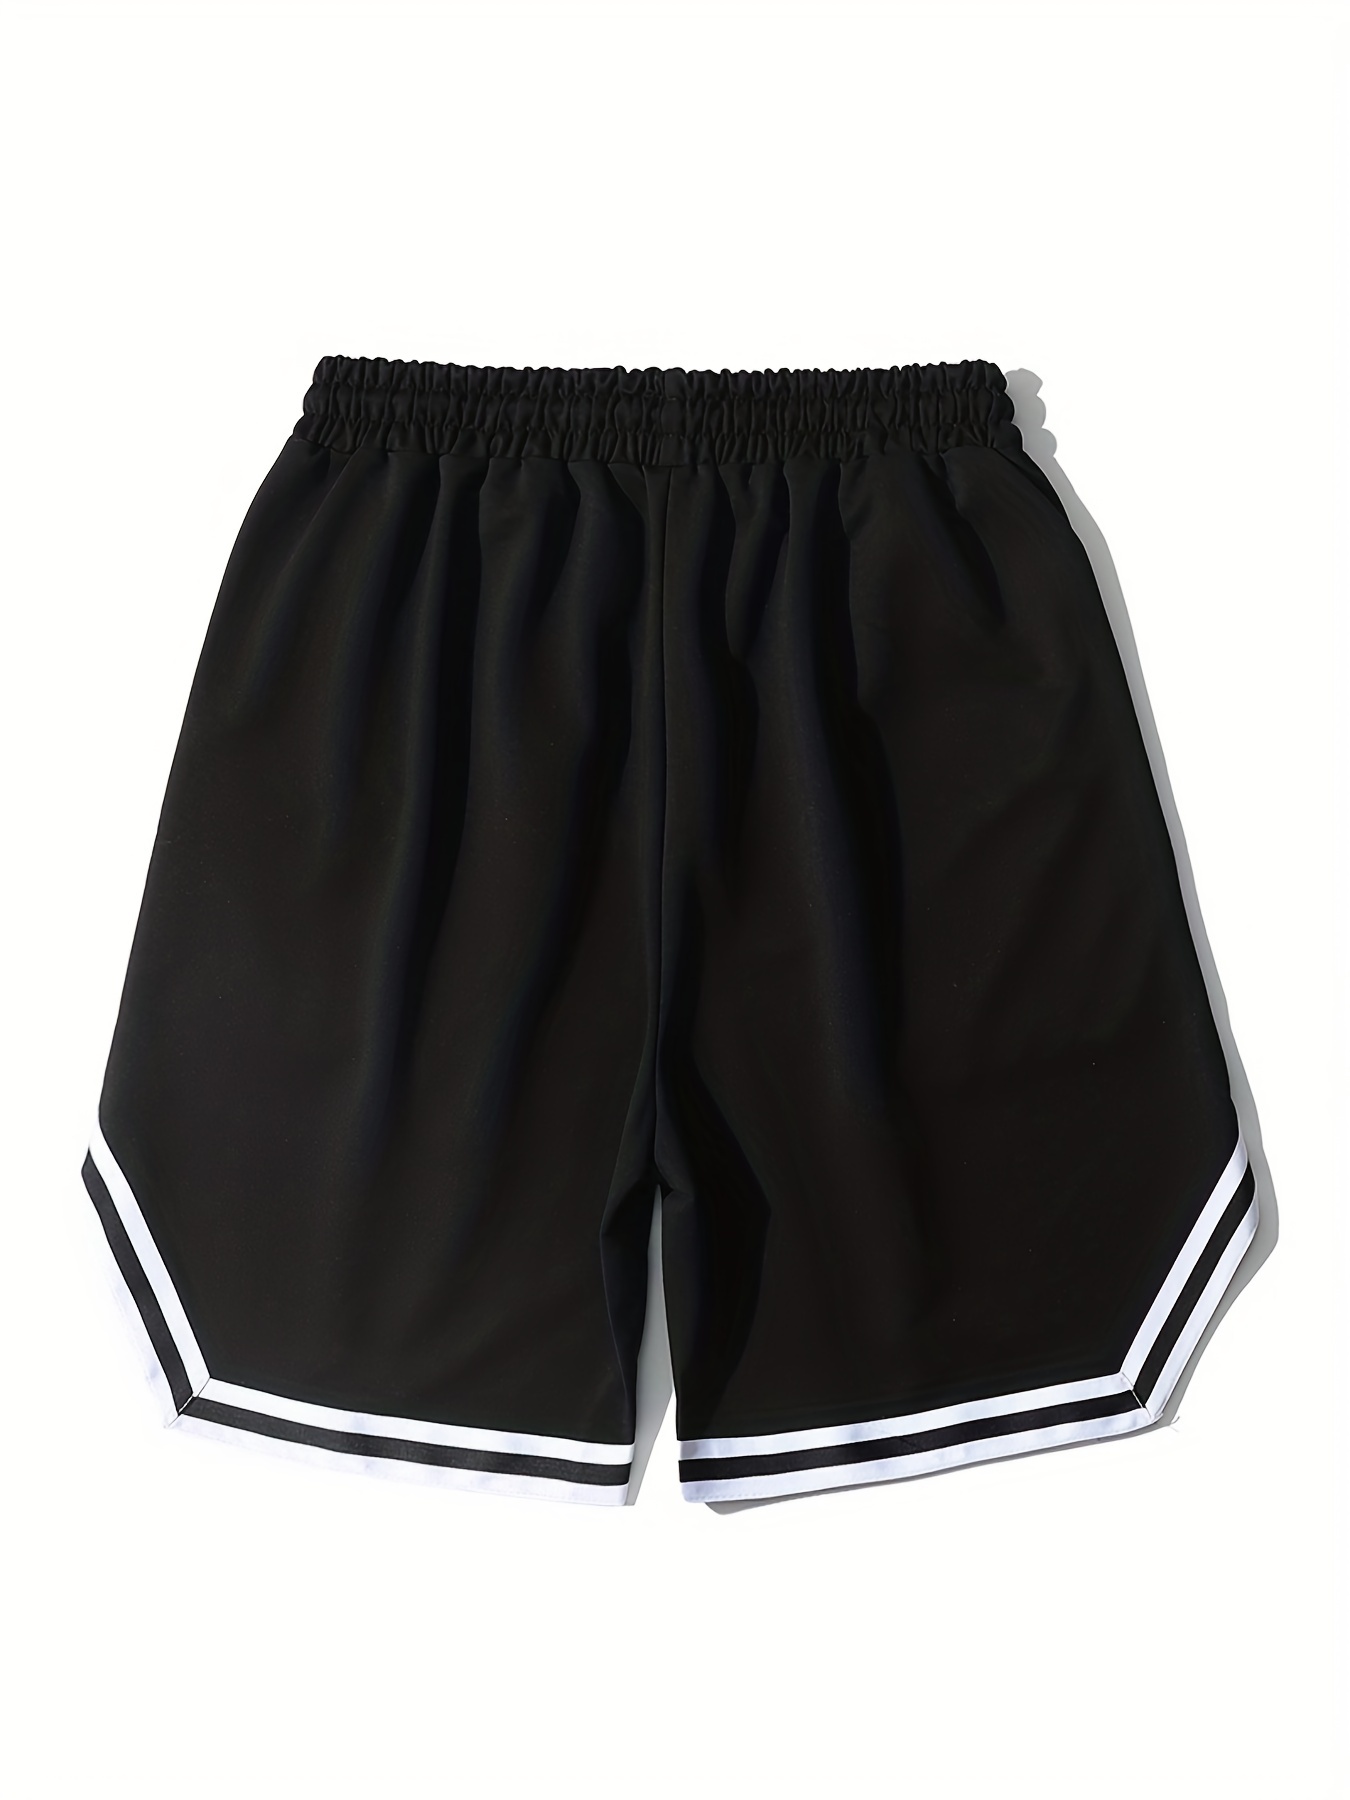 Pantalones cortos deportivos Hombres Baloncesto, Pantalones cortos  deportivos para Hombre